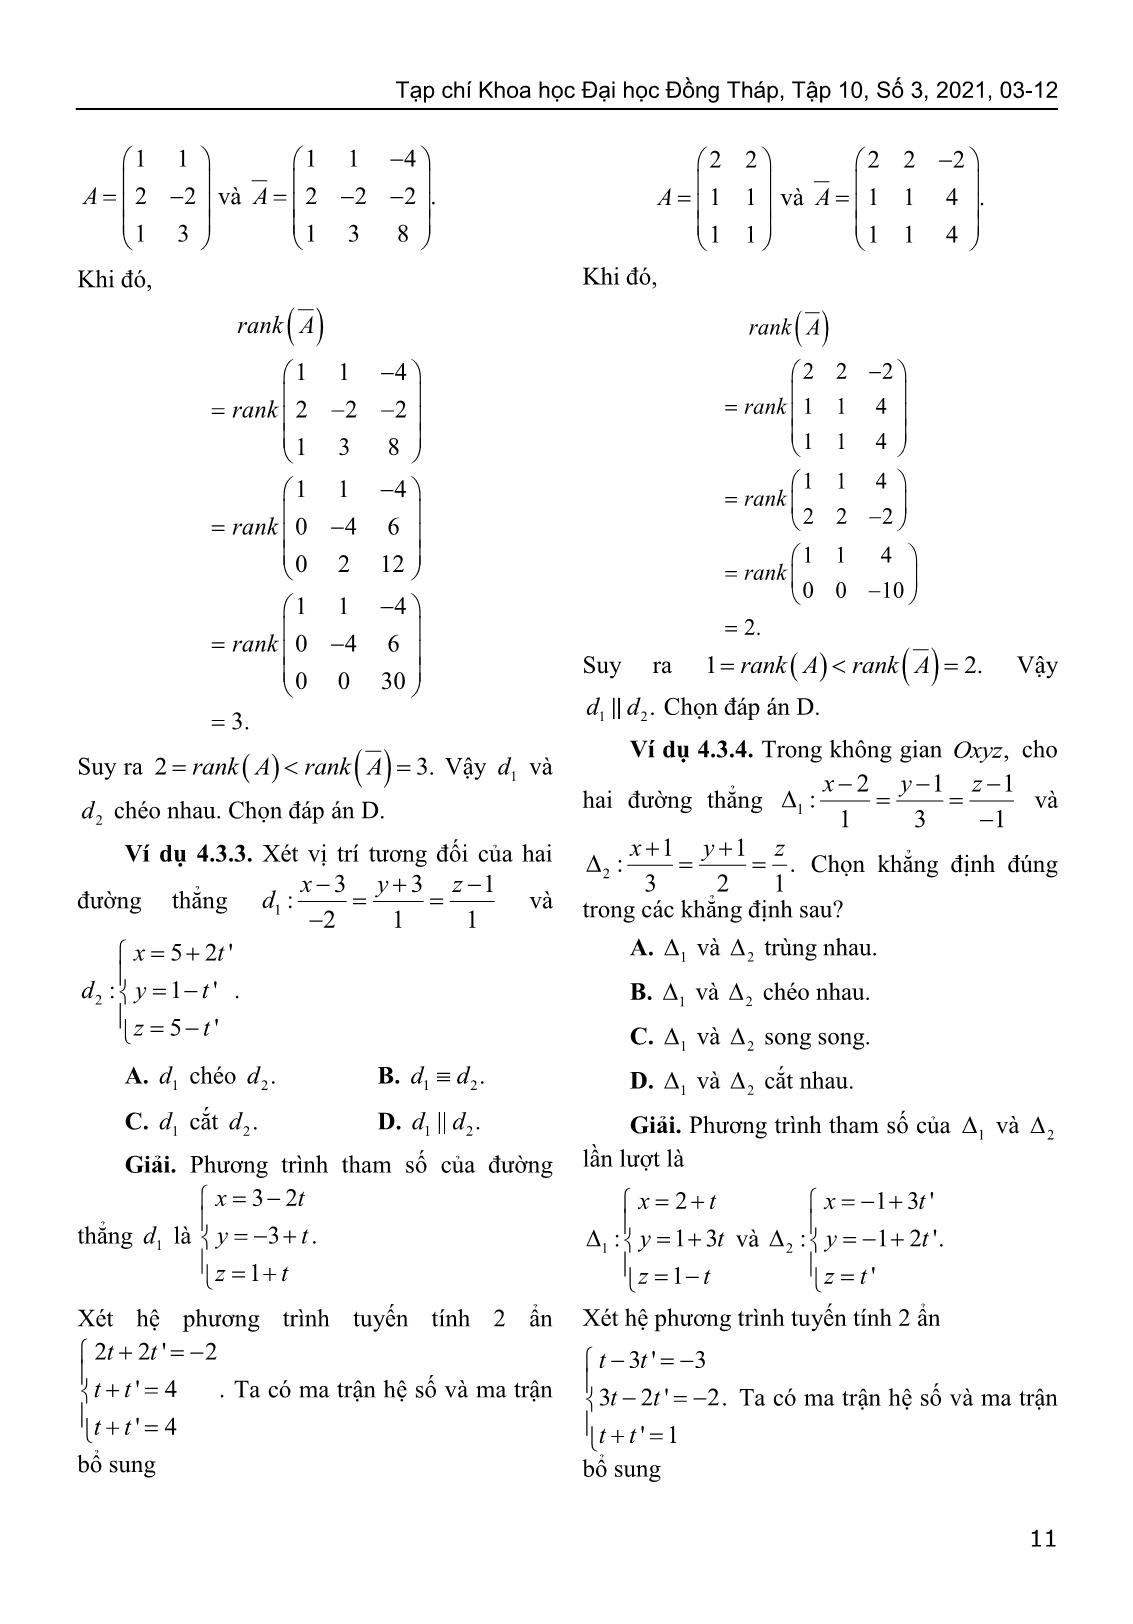 Sử dụng định lý Kronecker-Capelli giải bài toán về vị trí tương đối của hình học giải tích trong không gian trang 9